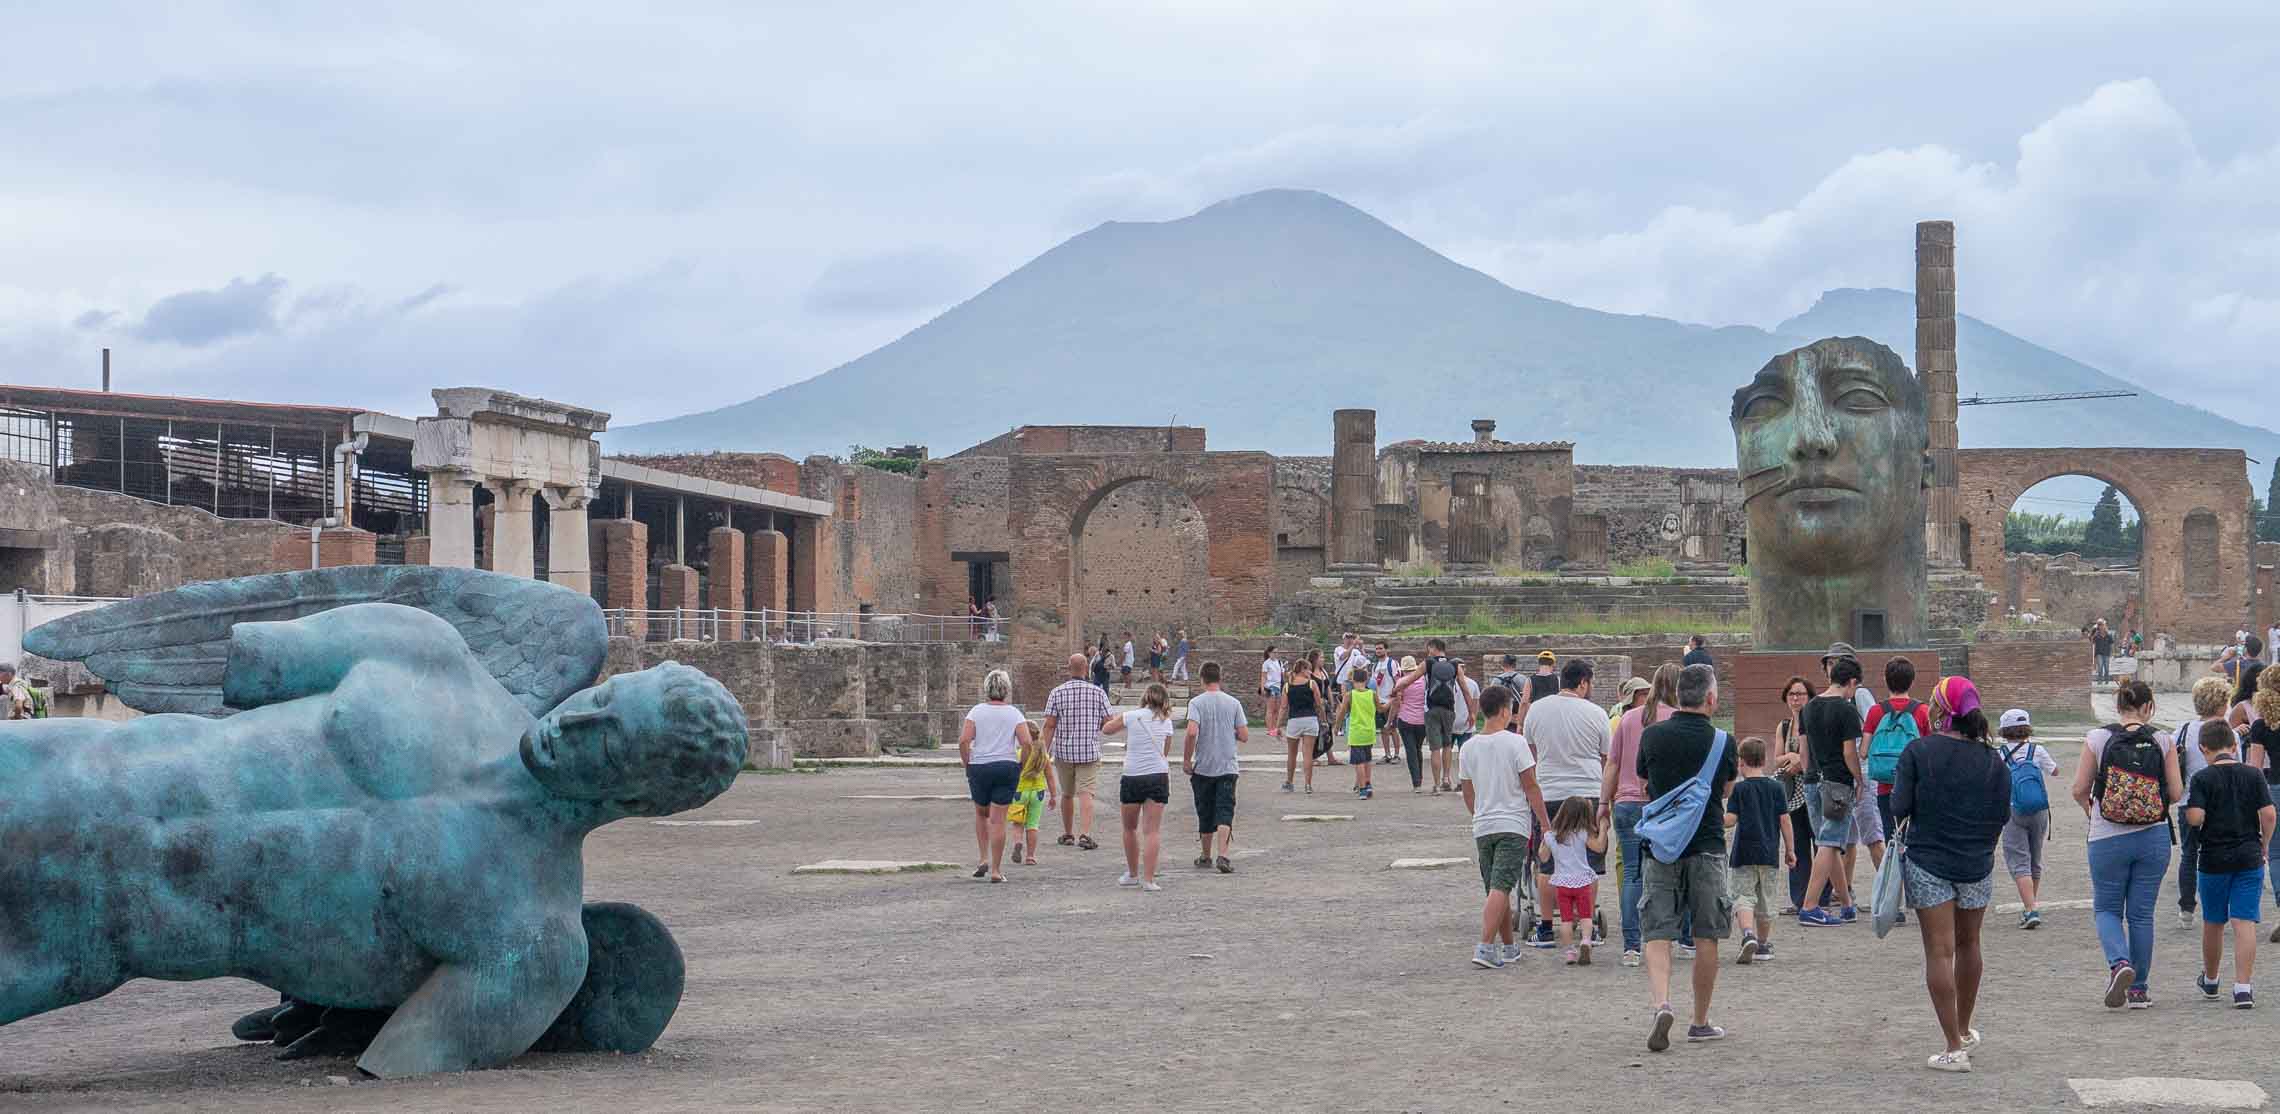 Ds Forum der ausgegrabenen antiken Stadt Pompeji in Italien im Hintergrund der Vulkan Vesuv.